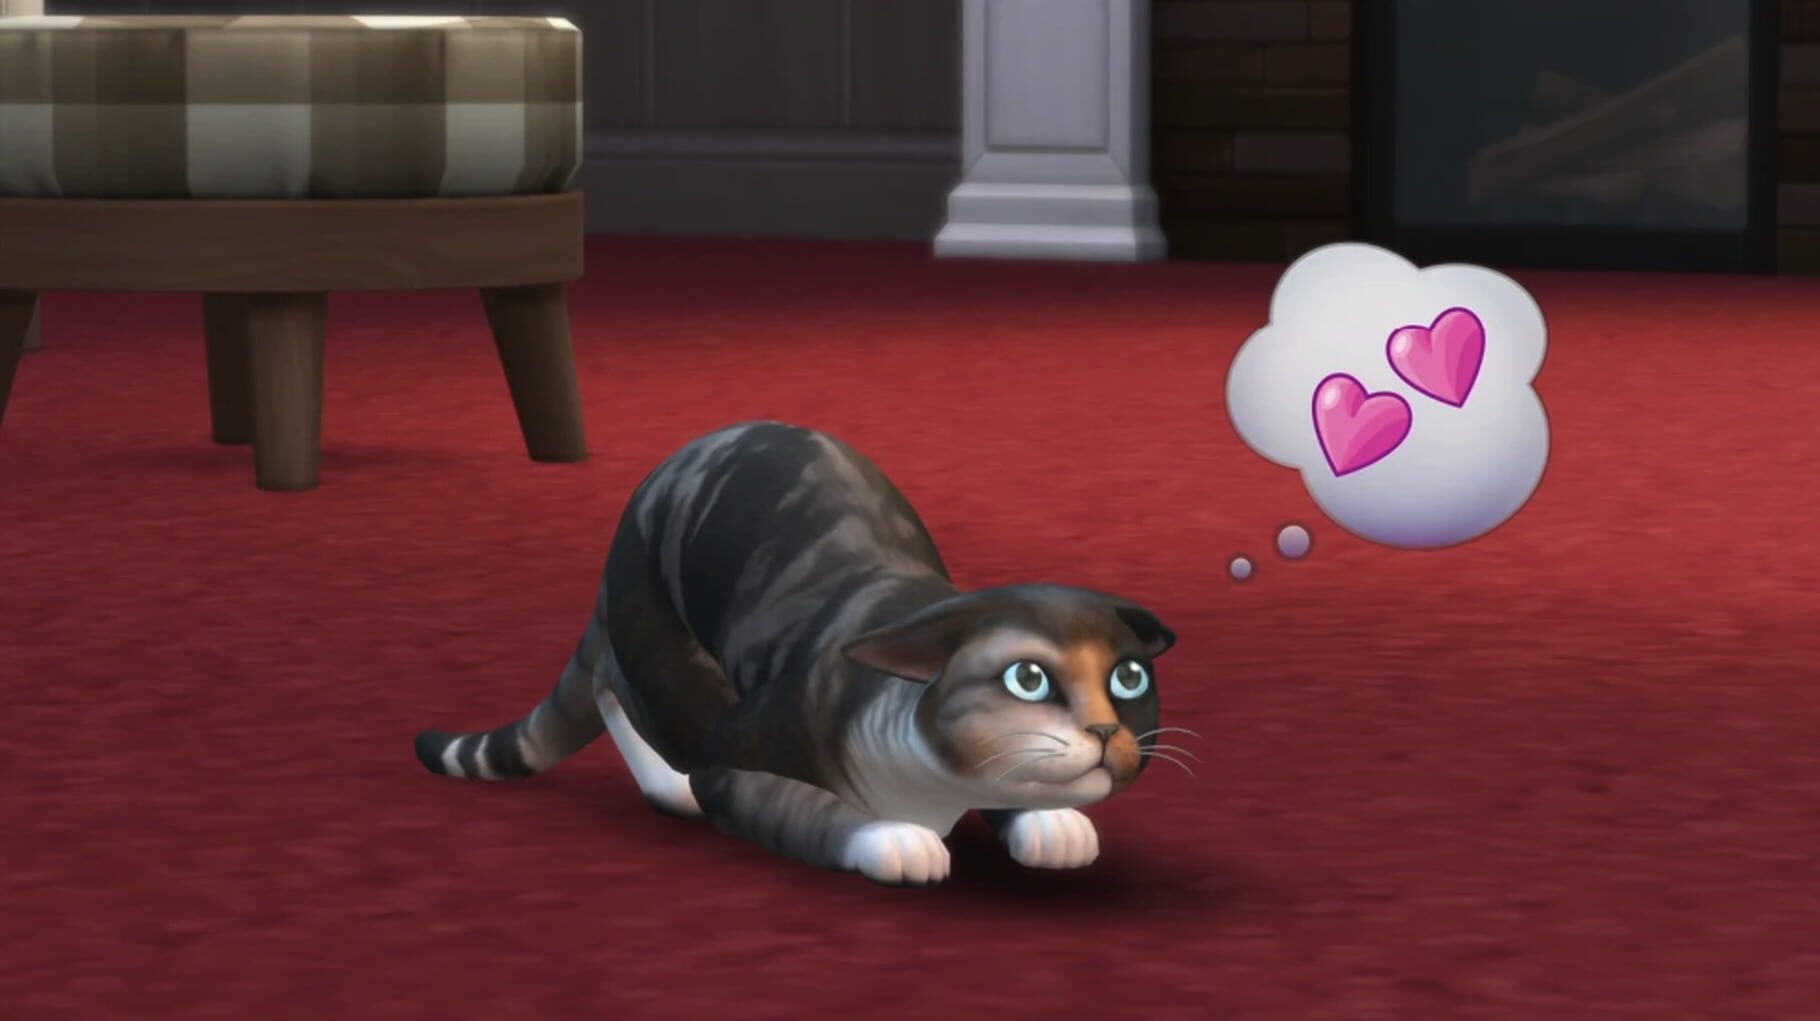 Captura de pantalla - The Sims 4: Cats & Dogs